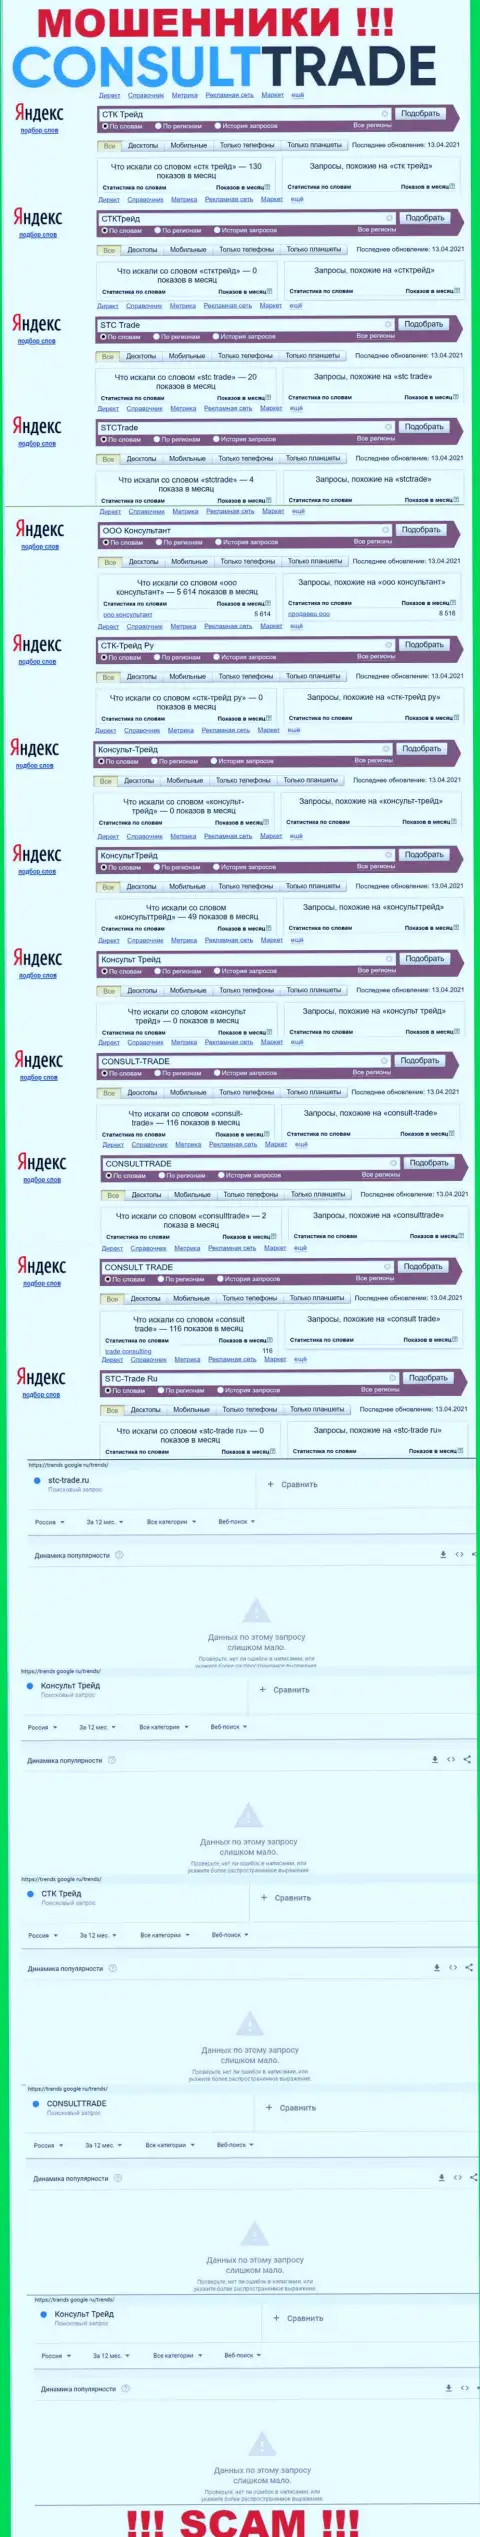 Скриншот результатов онлайн-запросов по жульнической компании CONSULT-TRADE